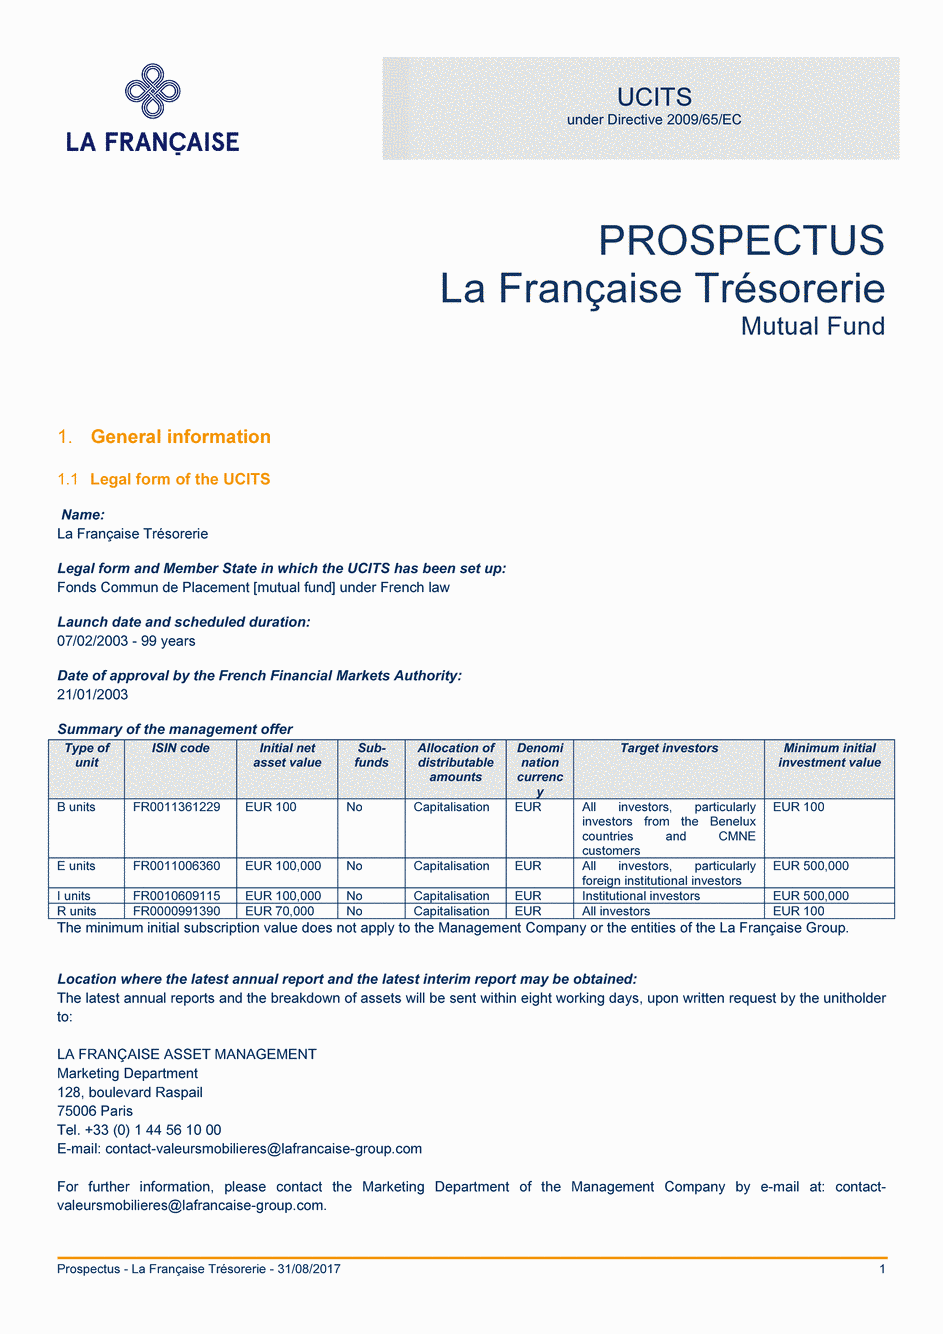 Prospectus La Française Trésorerie - Part I - 31/08/2017 - Anglais